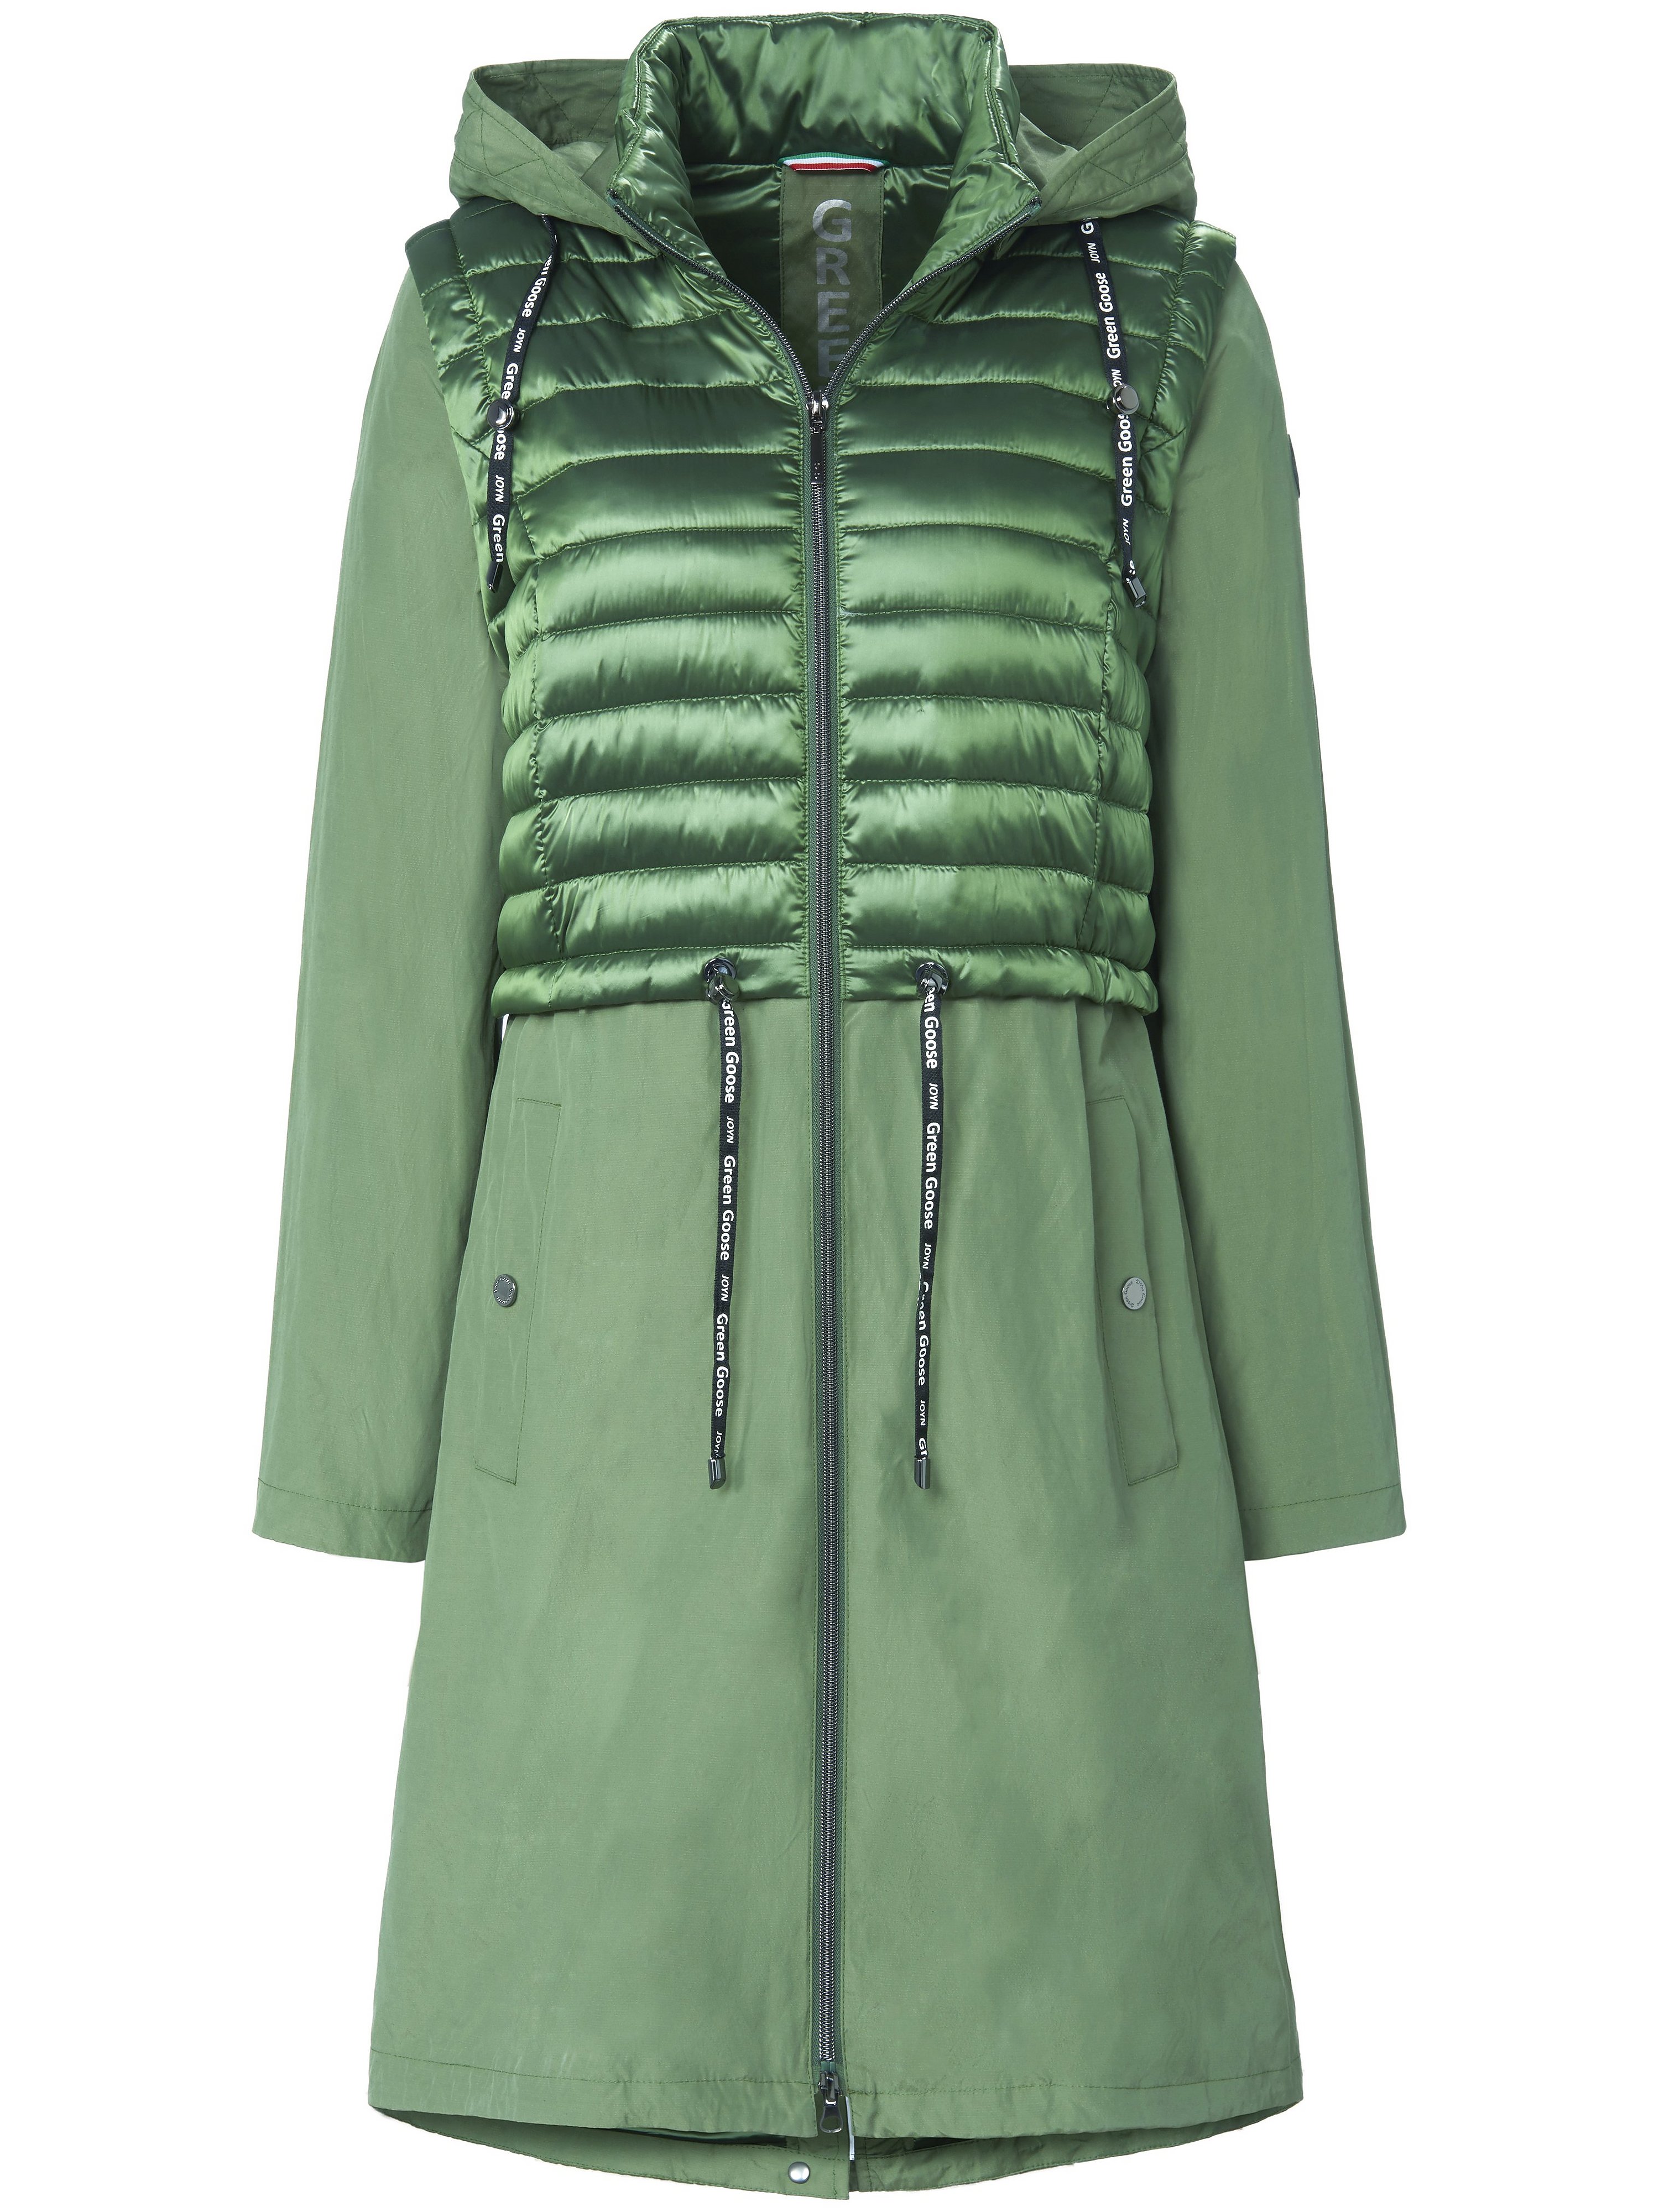 2-in-1 coat detachable sleeves Green Goose green